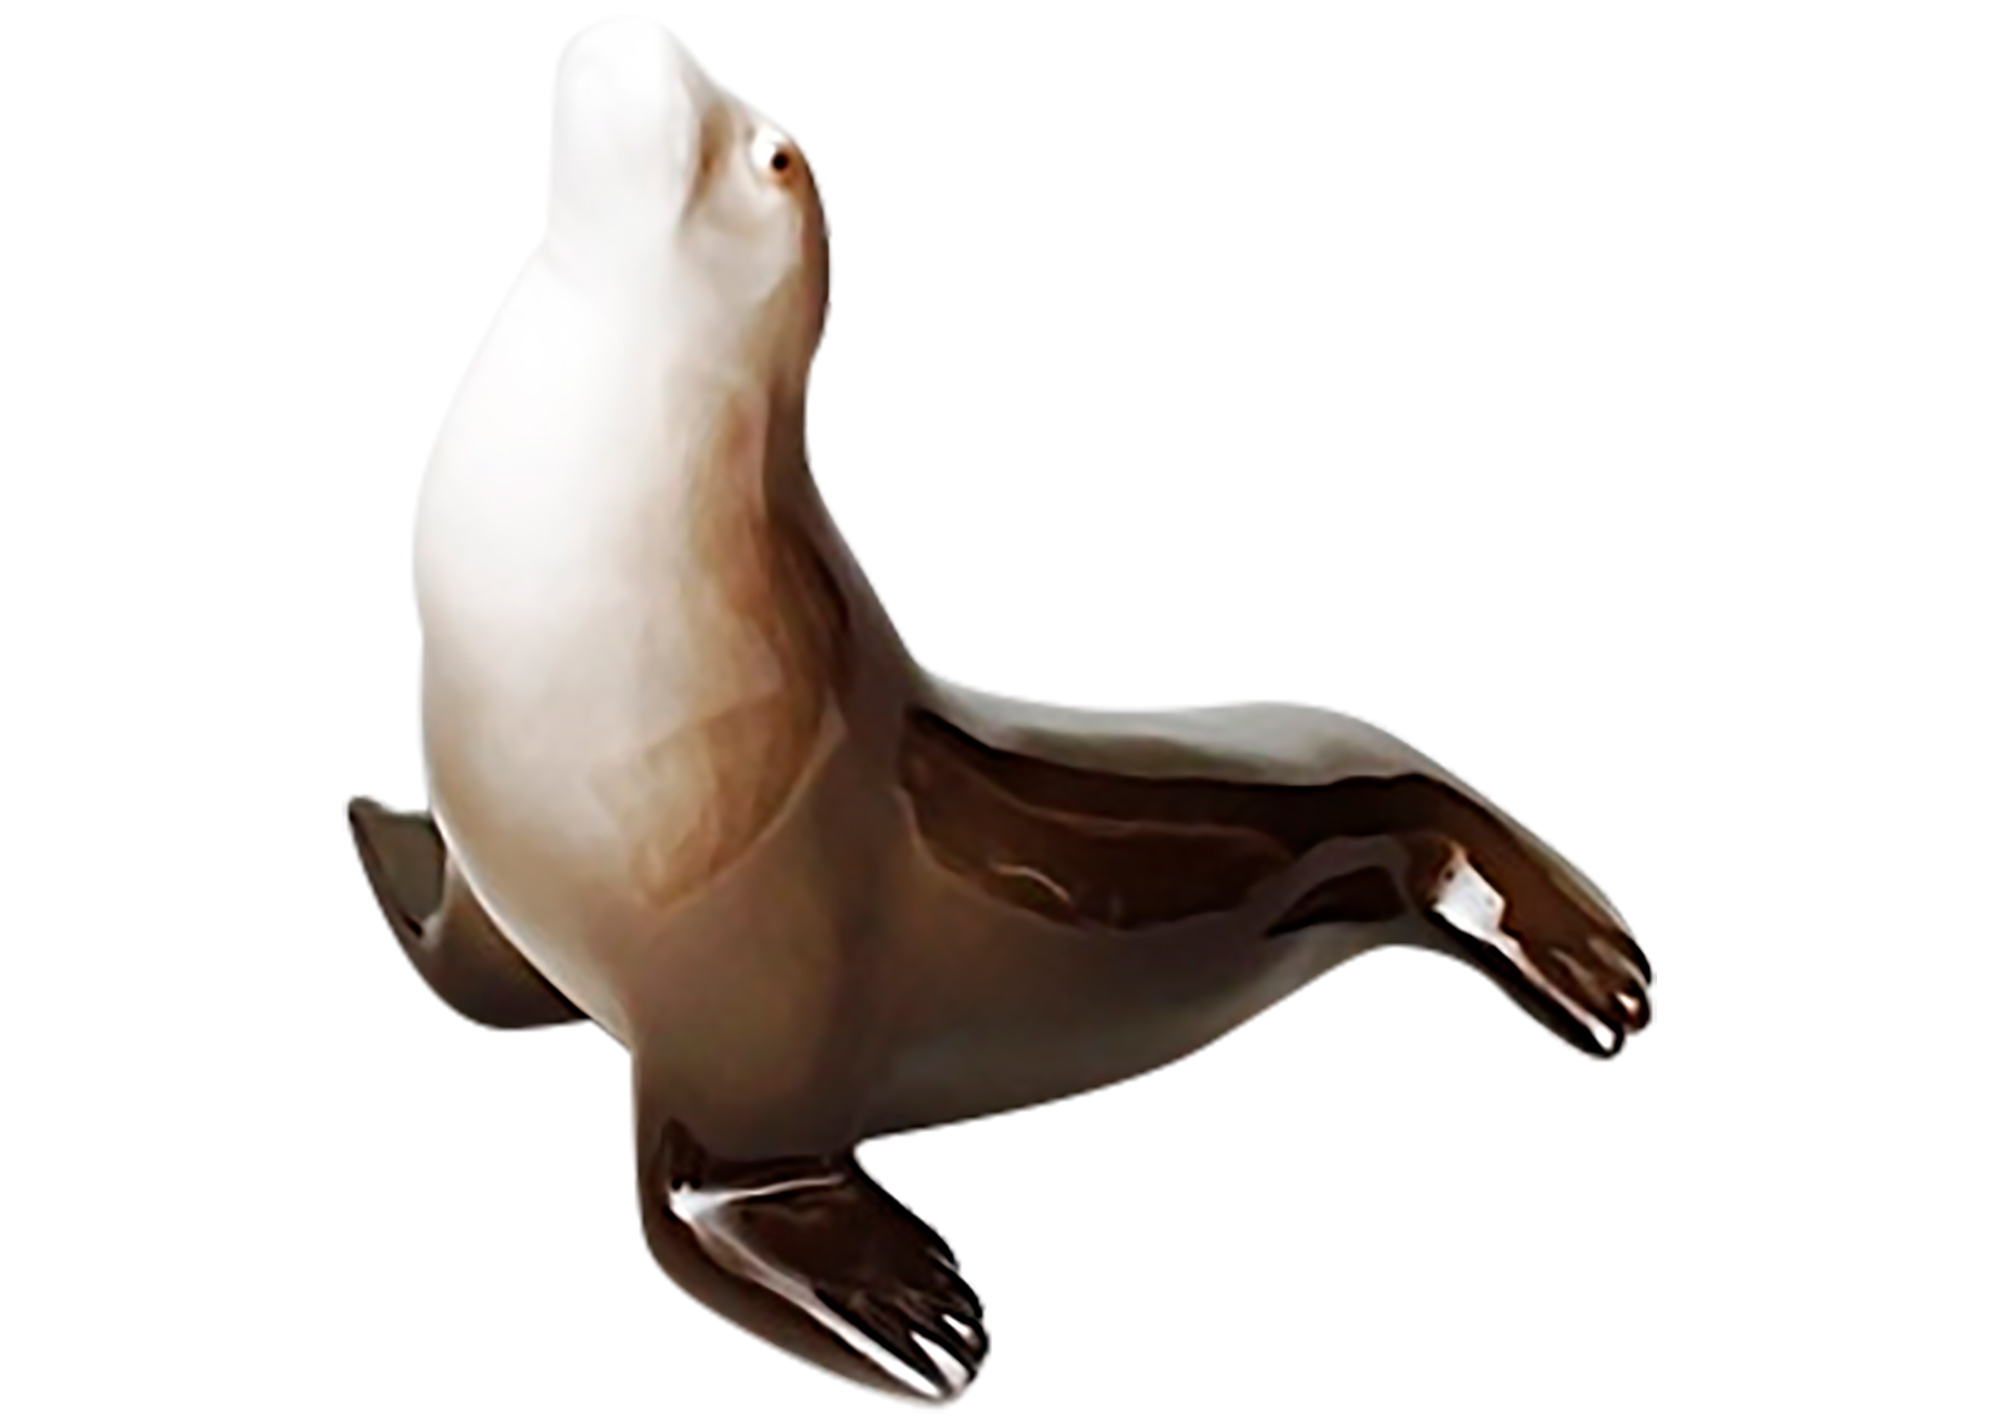 Buy Porcelain Seal Figurine at GoldenCockerel.com